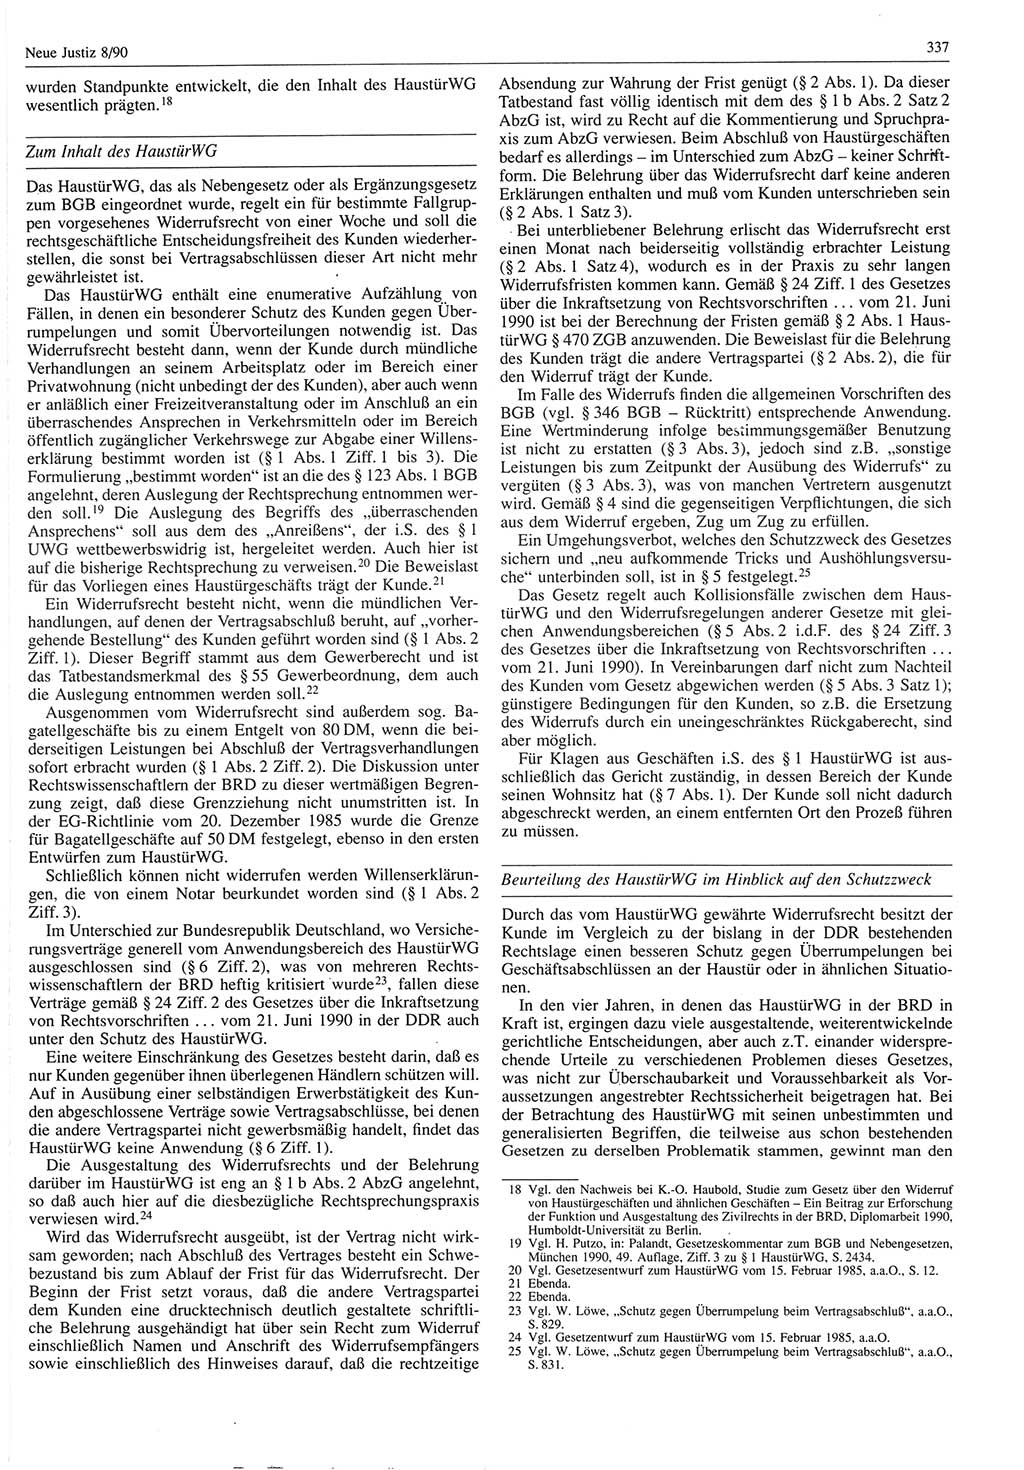 Neue Justiz (NJ), Zeitschrift für Rechtsetzung und Rechtsanwendung [Deutsche Demokratische Republik (DDR)], 44. Jahrgang 1990, Seite 337 (NJ DDR 1990, S. 337)